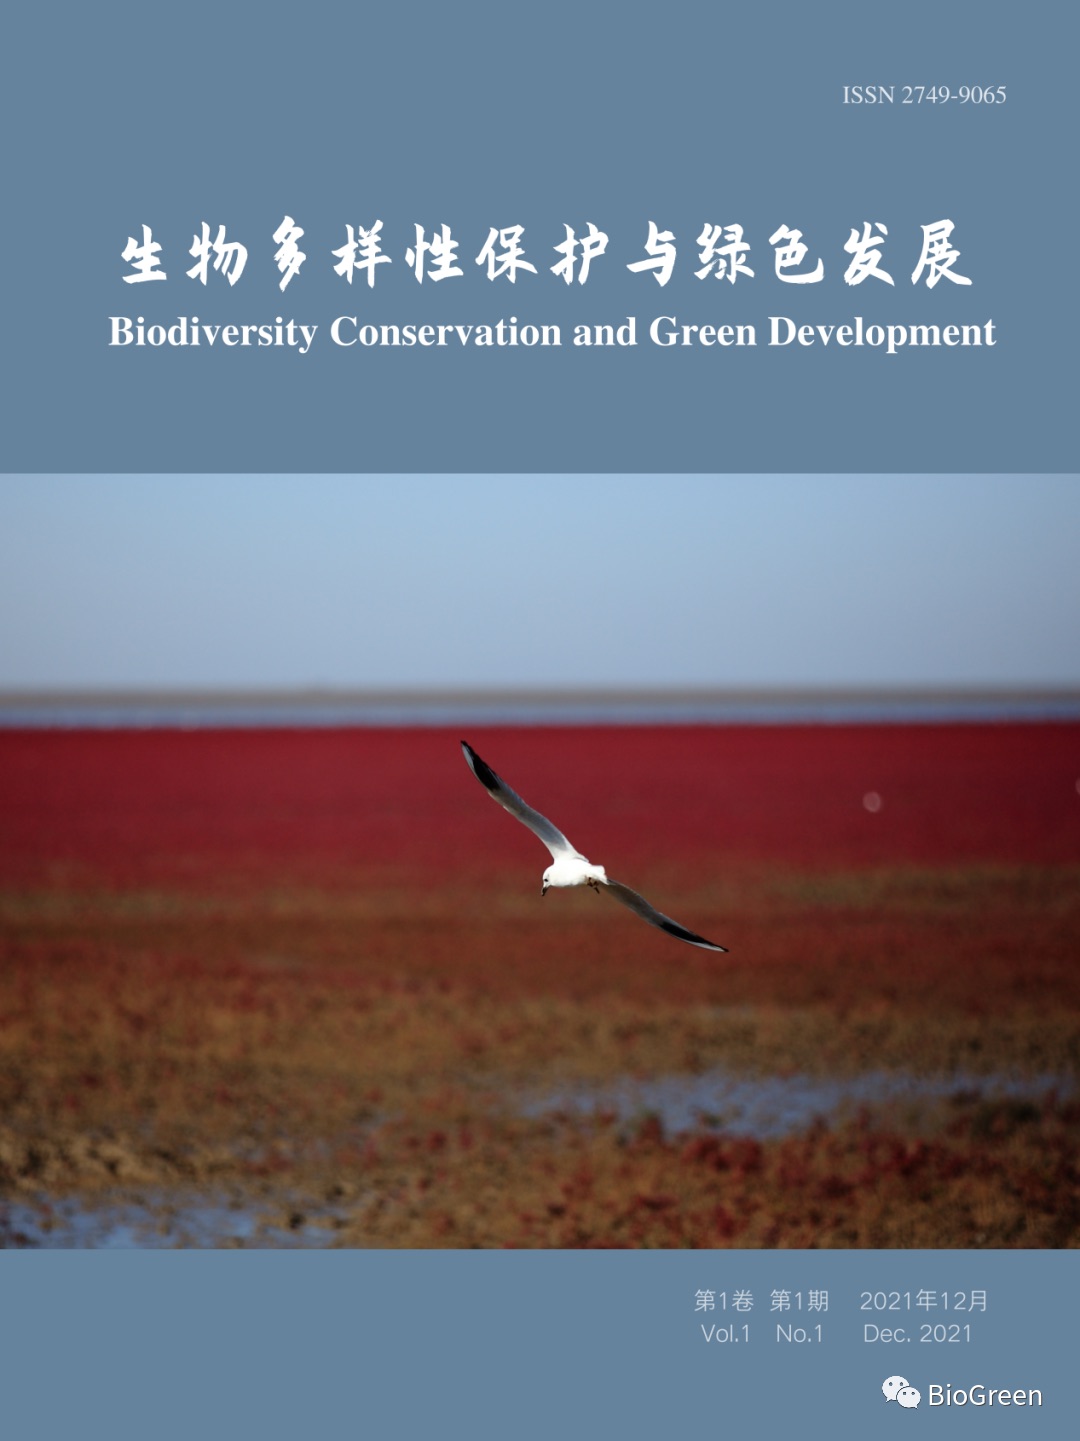 杜晖贤应邀成为《生物多样性保护与绿色发展》（BioGreen）顾问.jpg